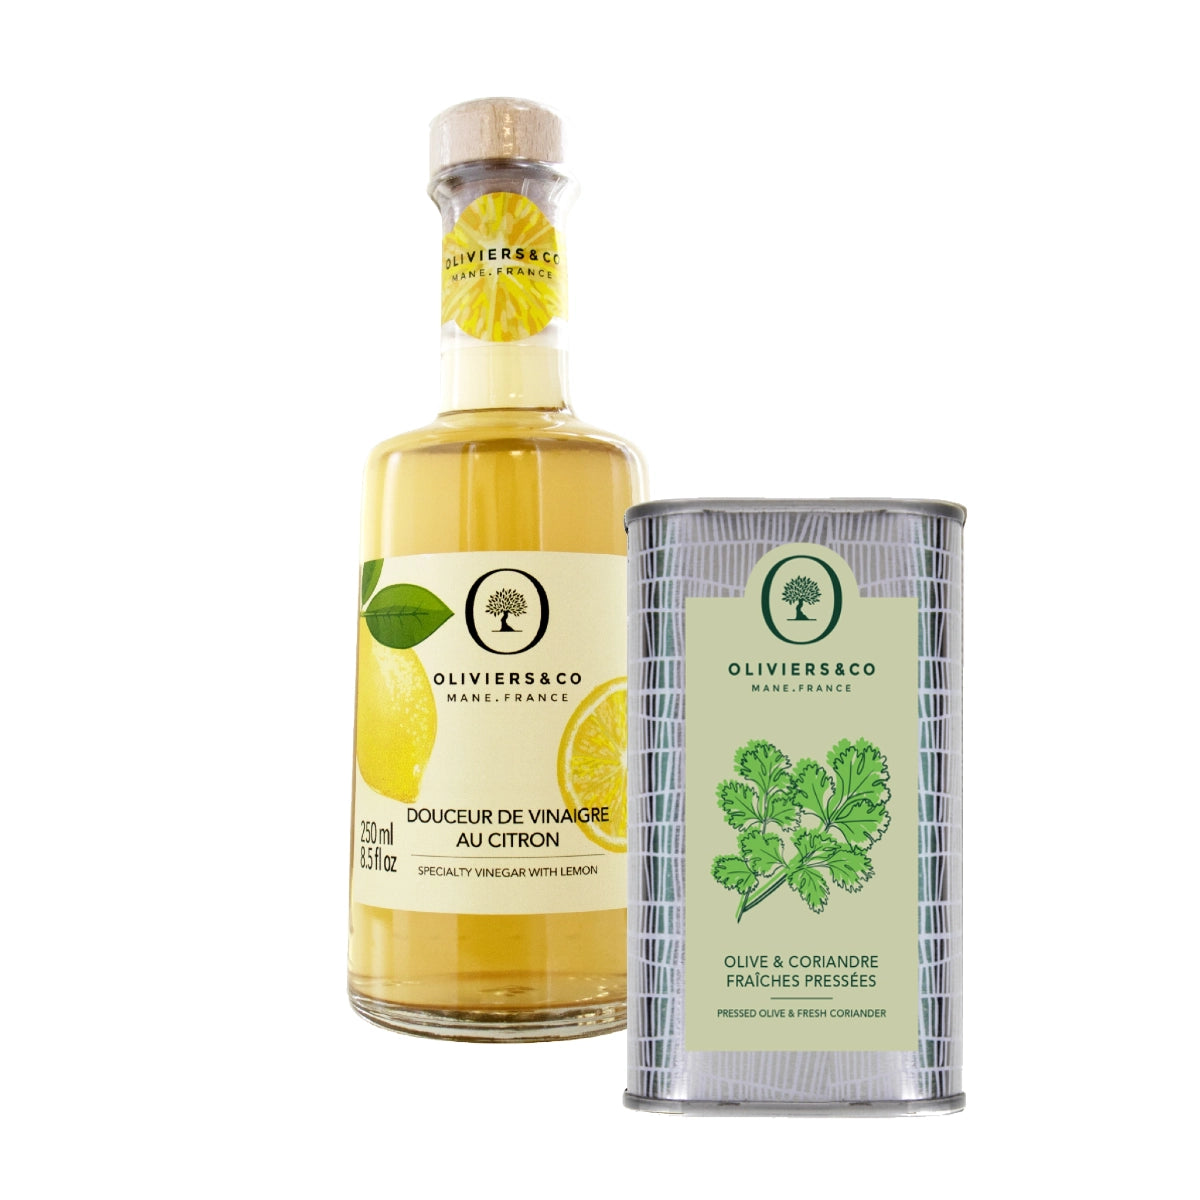 Olie & eddikesæt koriander olivenolie og citroneddike, Oliviers & Co